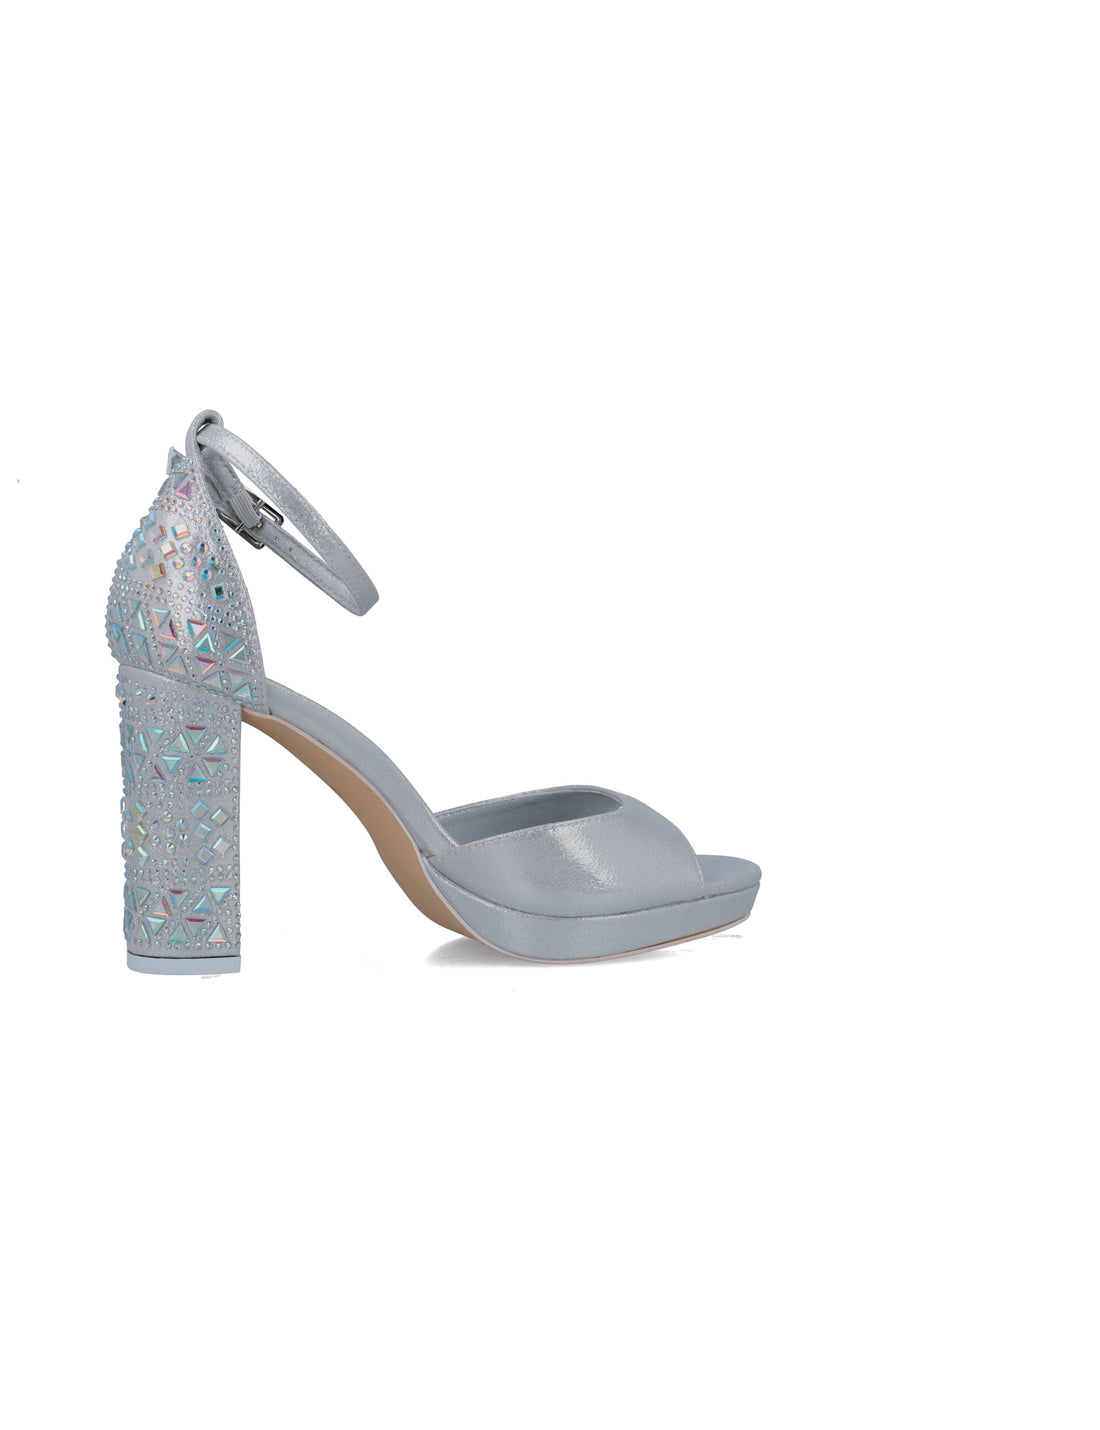 Silver Embellished High-Heel Sandals_24879_09_02